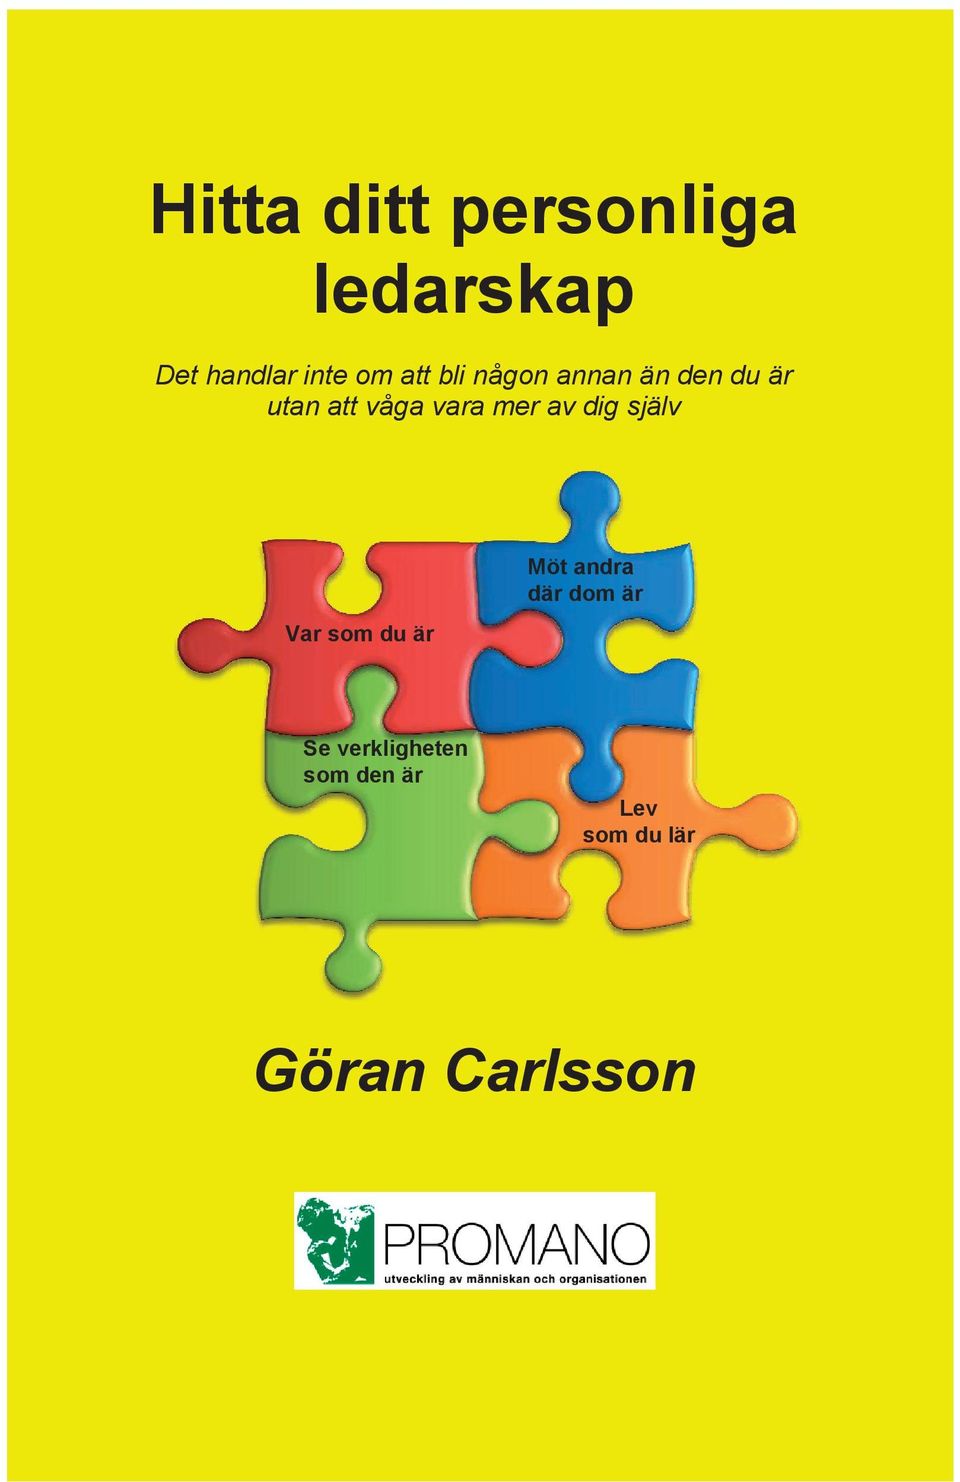 Carlsson Hitta ditt personlig ledarskap Det handlar inte om att bli någon annan än den du utan att våga